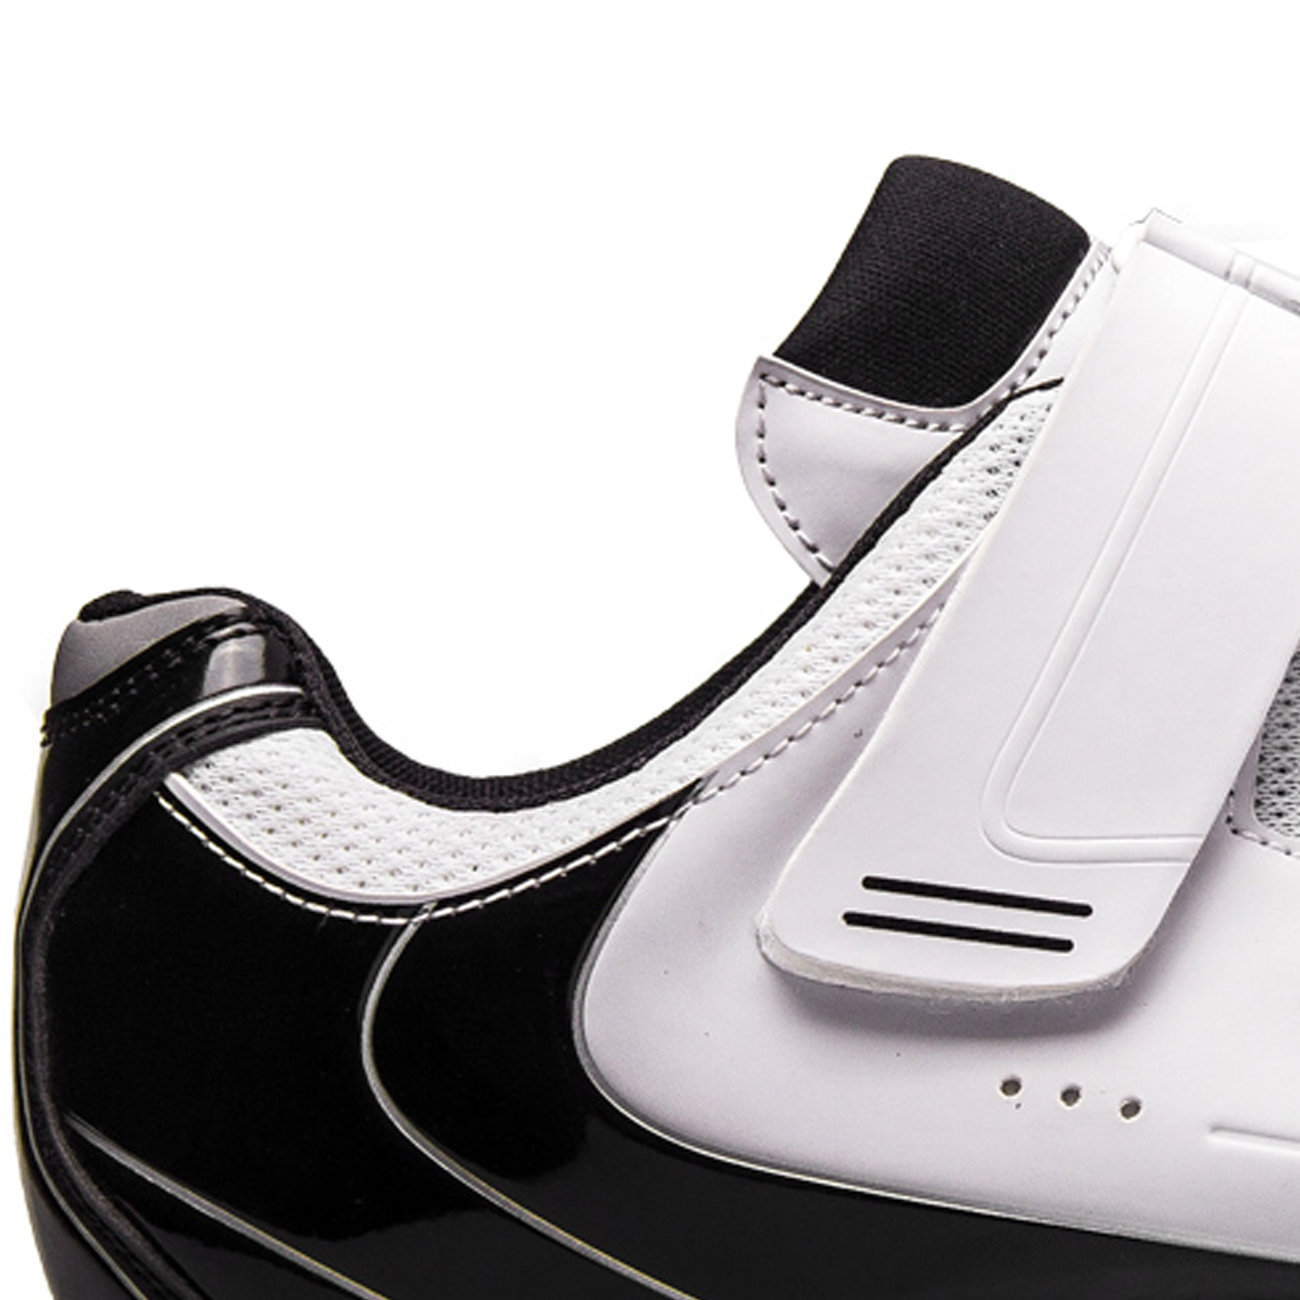 FLR Kerékpáros Cipő - F55 MTB - Fekete/fehér